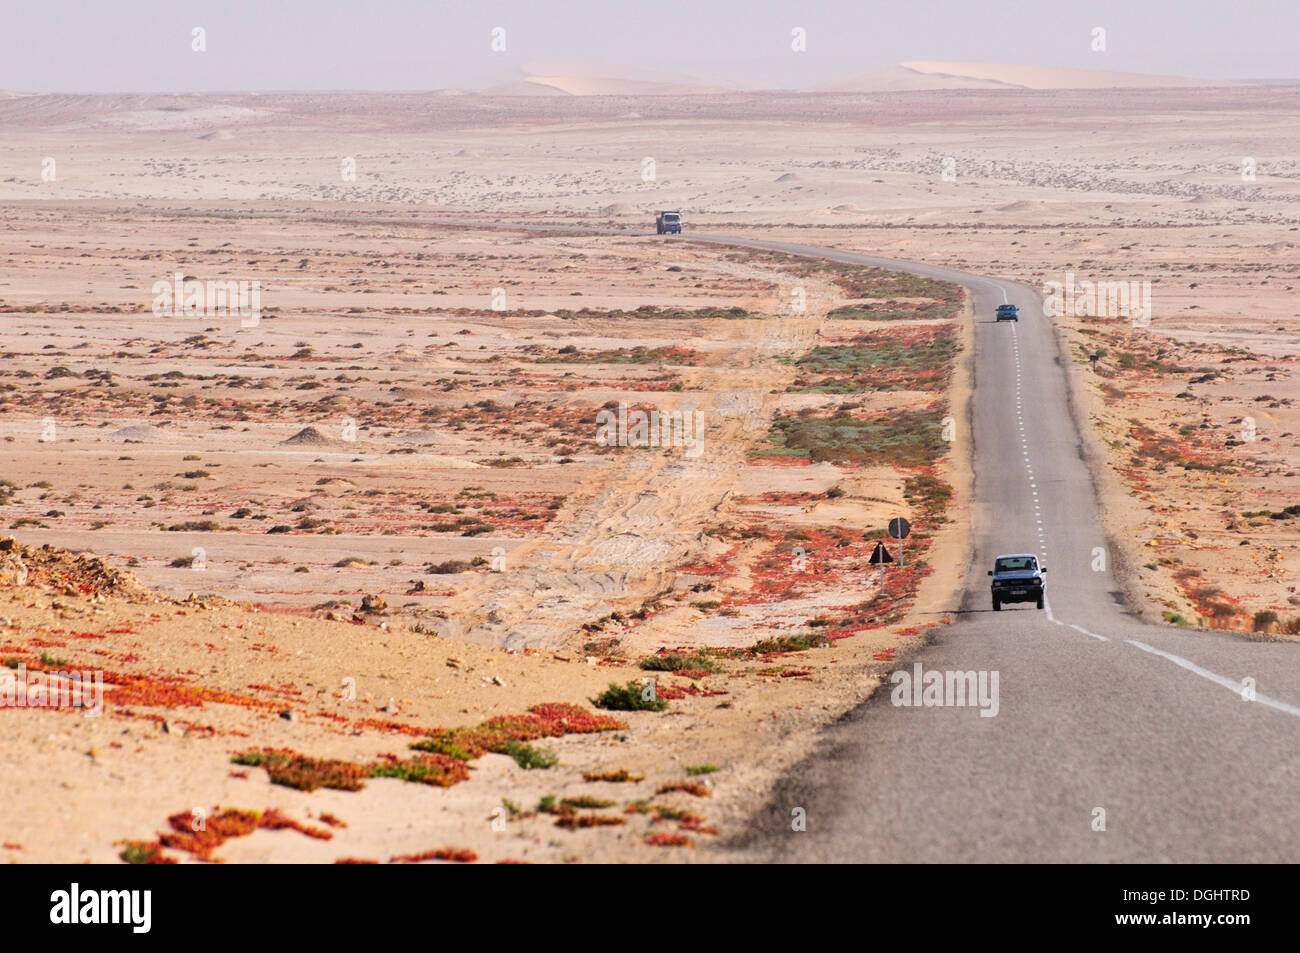 Route de campagne asphaltée au Sahara Occidental, vers la Mauritanie, Oued Ed-Dahab-Lagouira région, Maroc Banque D'Images